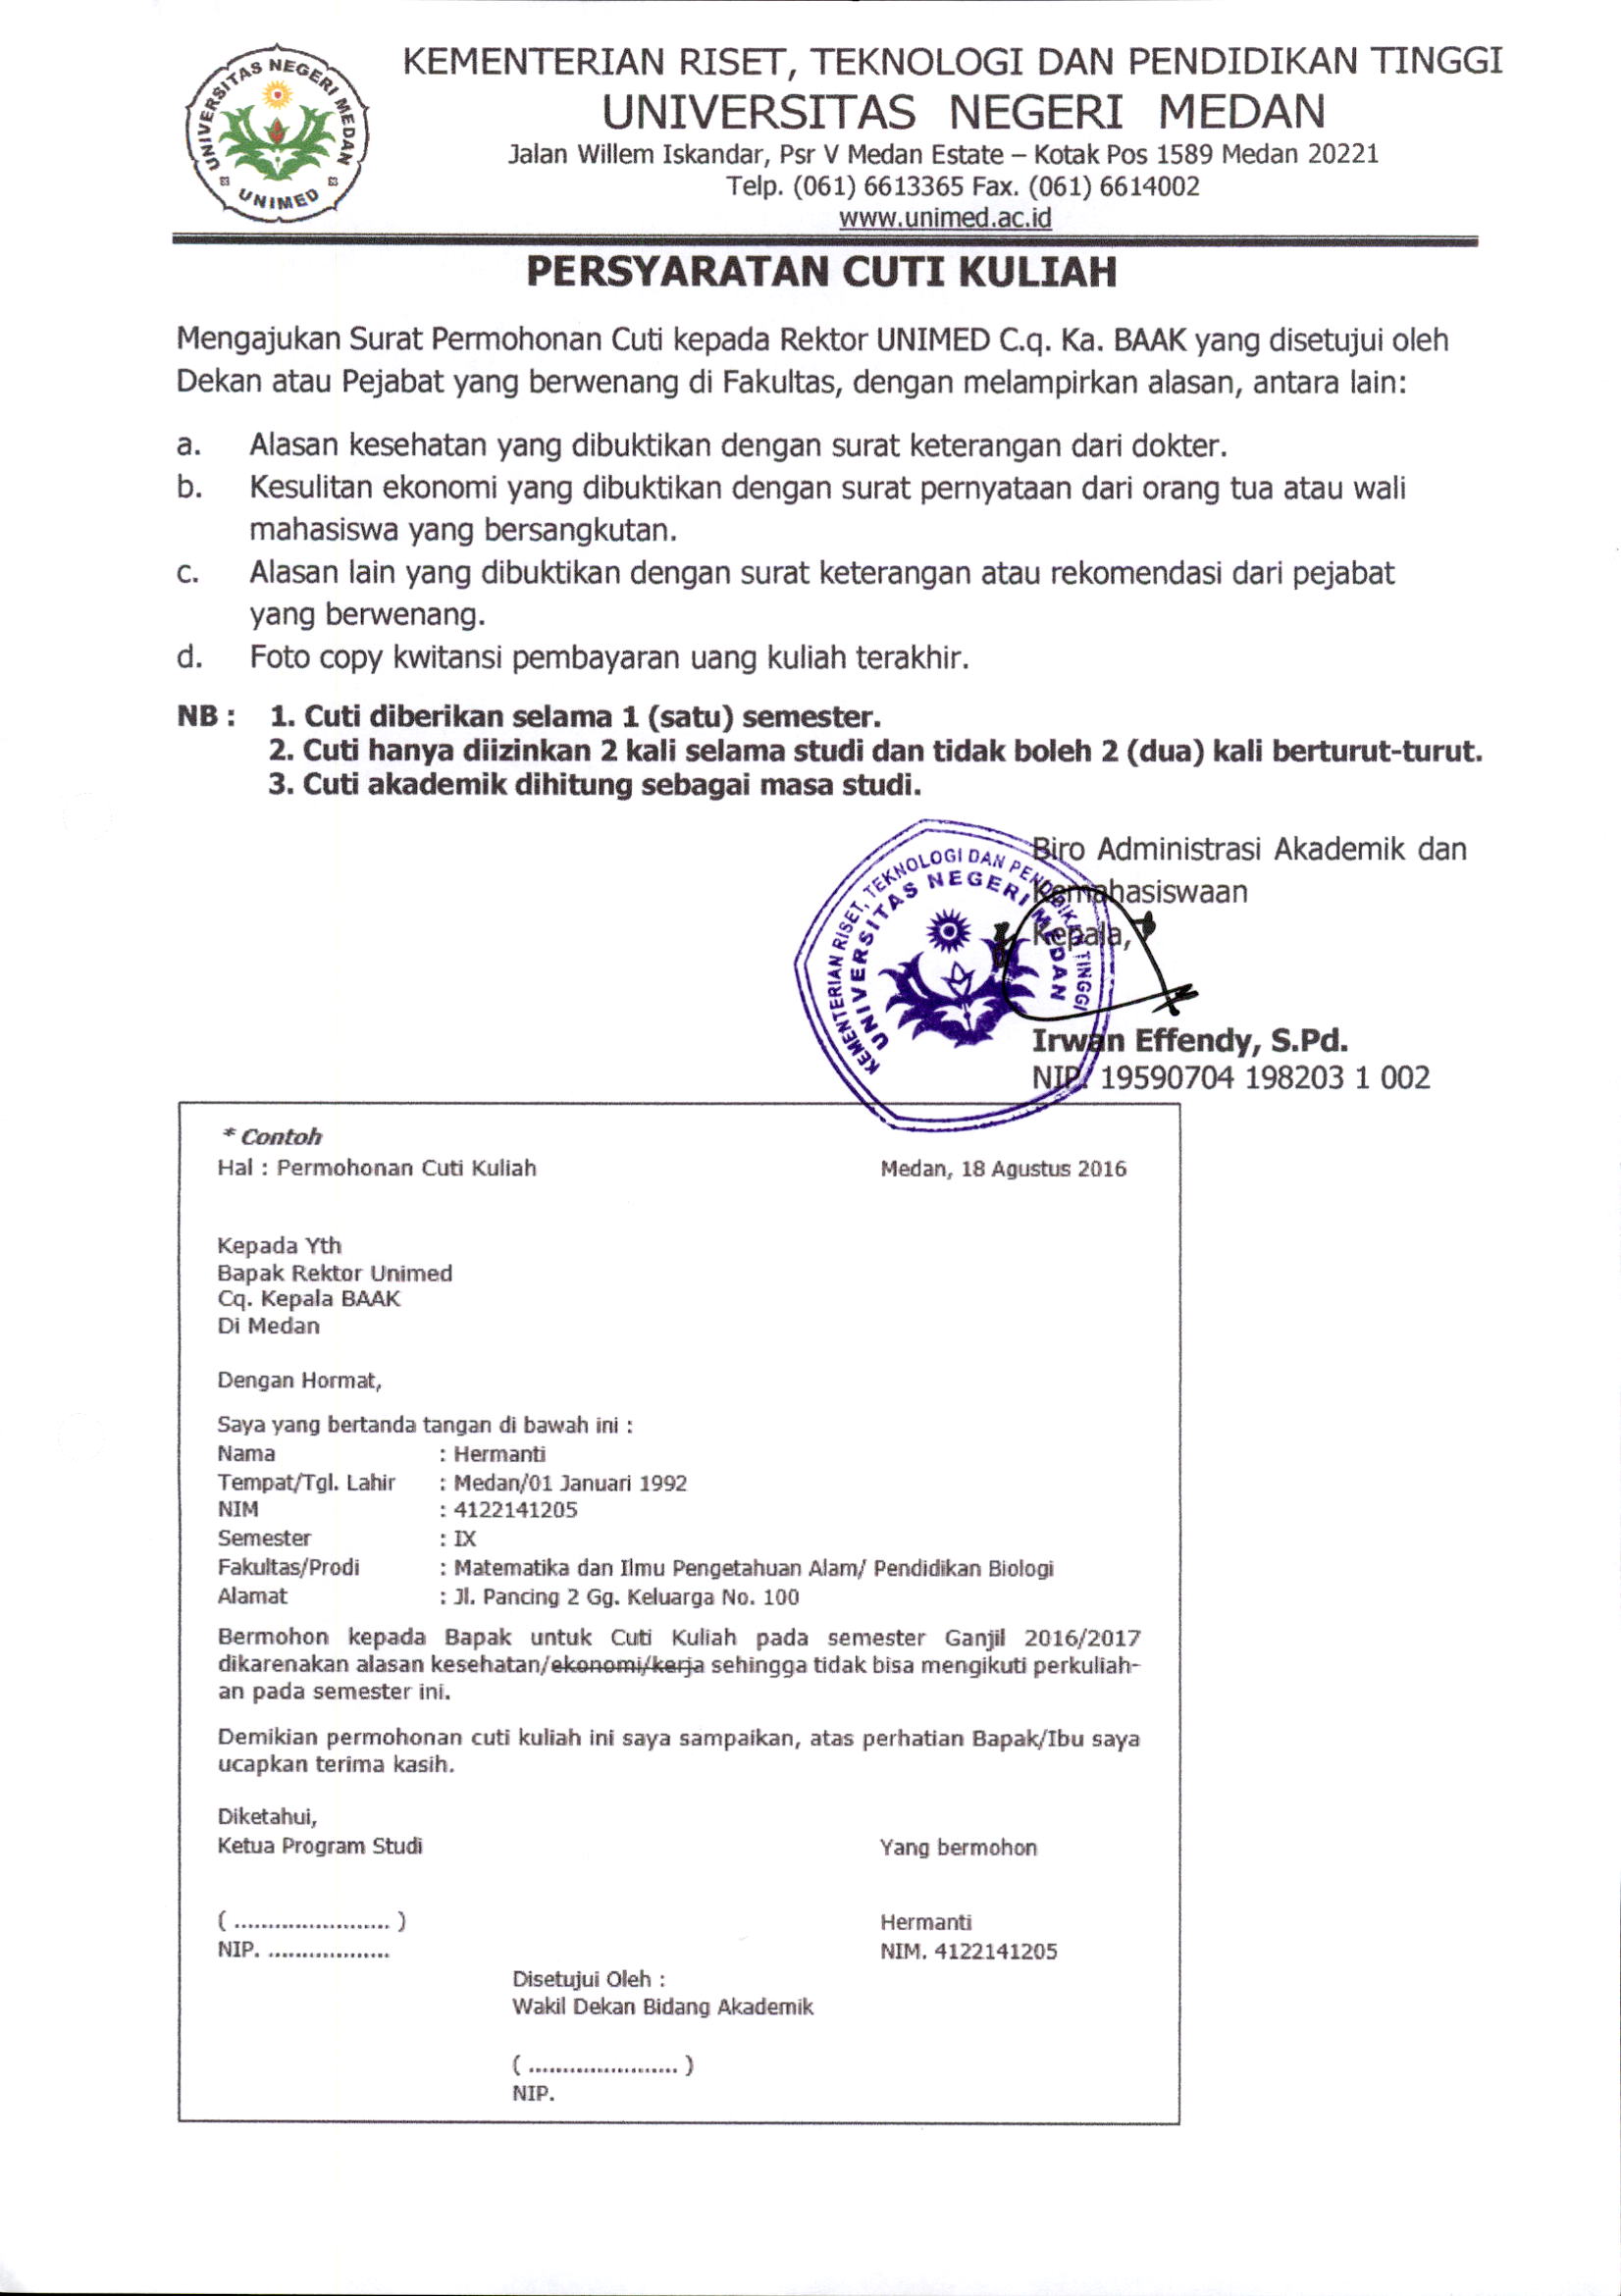 Aneka Contoh Surat Pernyataan Cuti Kuliah 83 Guna Ide Membuat Surat Pernyataan pada post Contoh Surat Pernyataan Cuti Kuliah